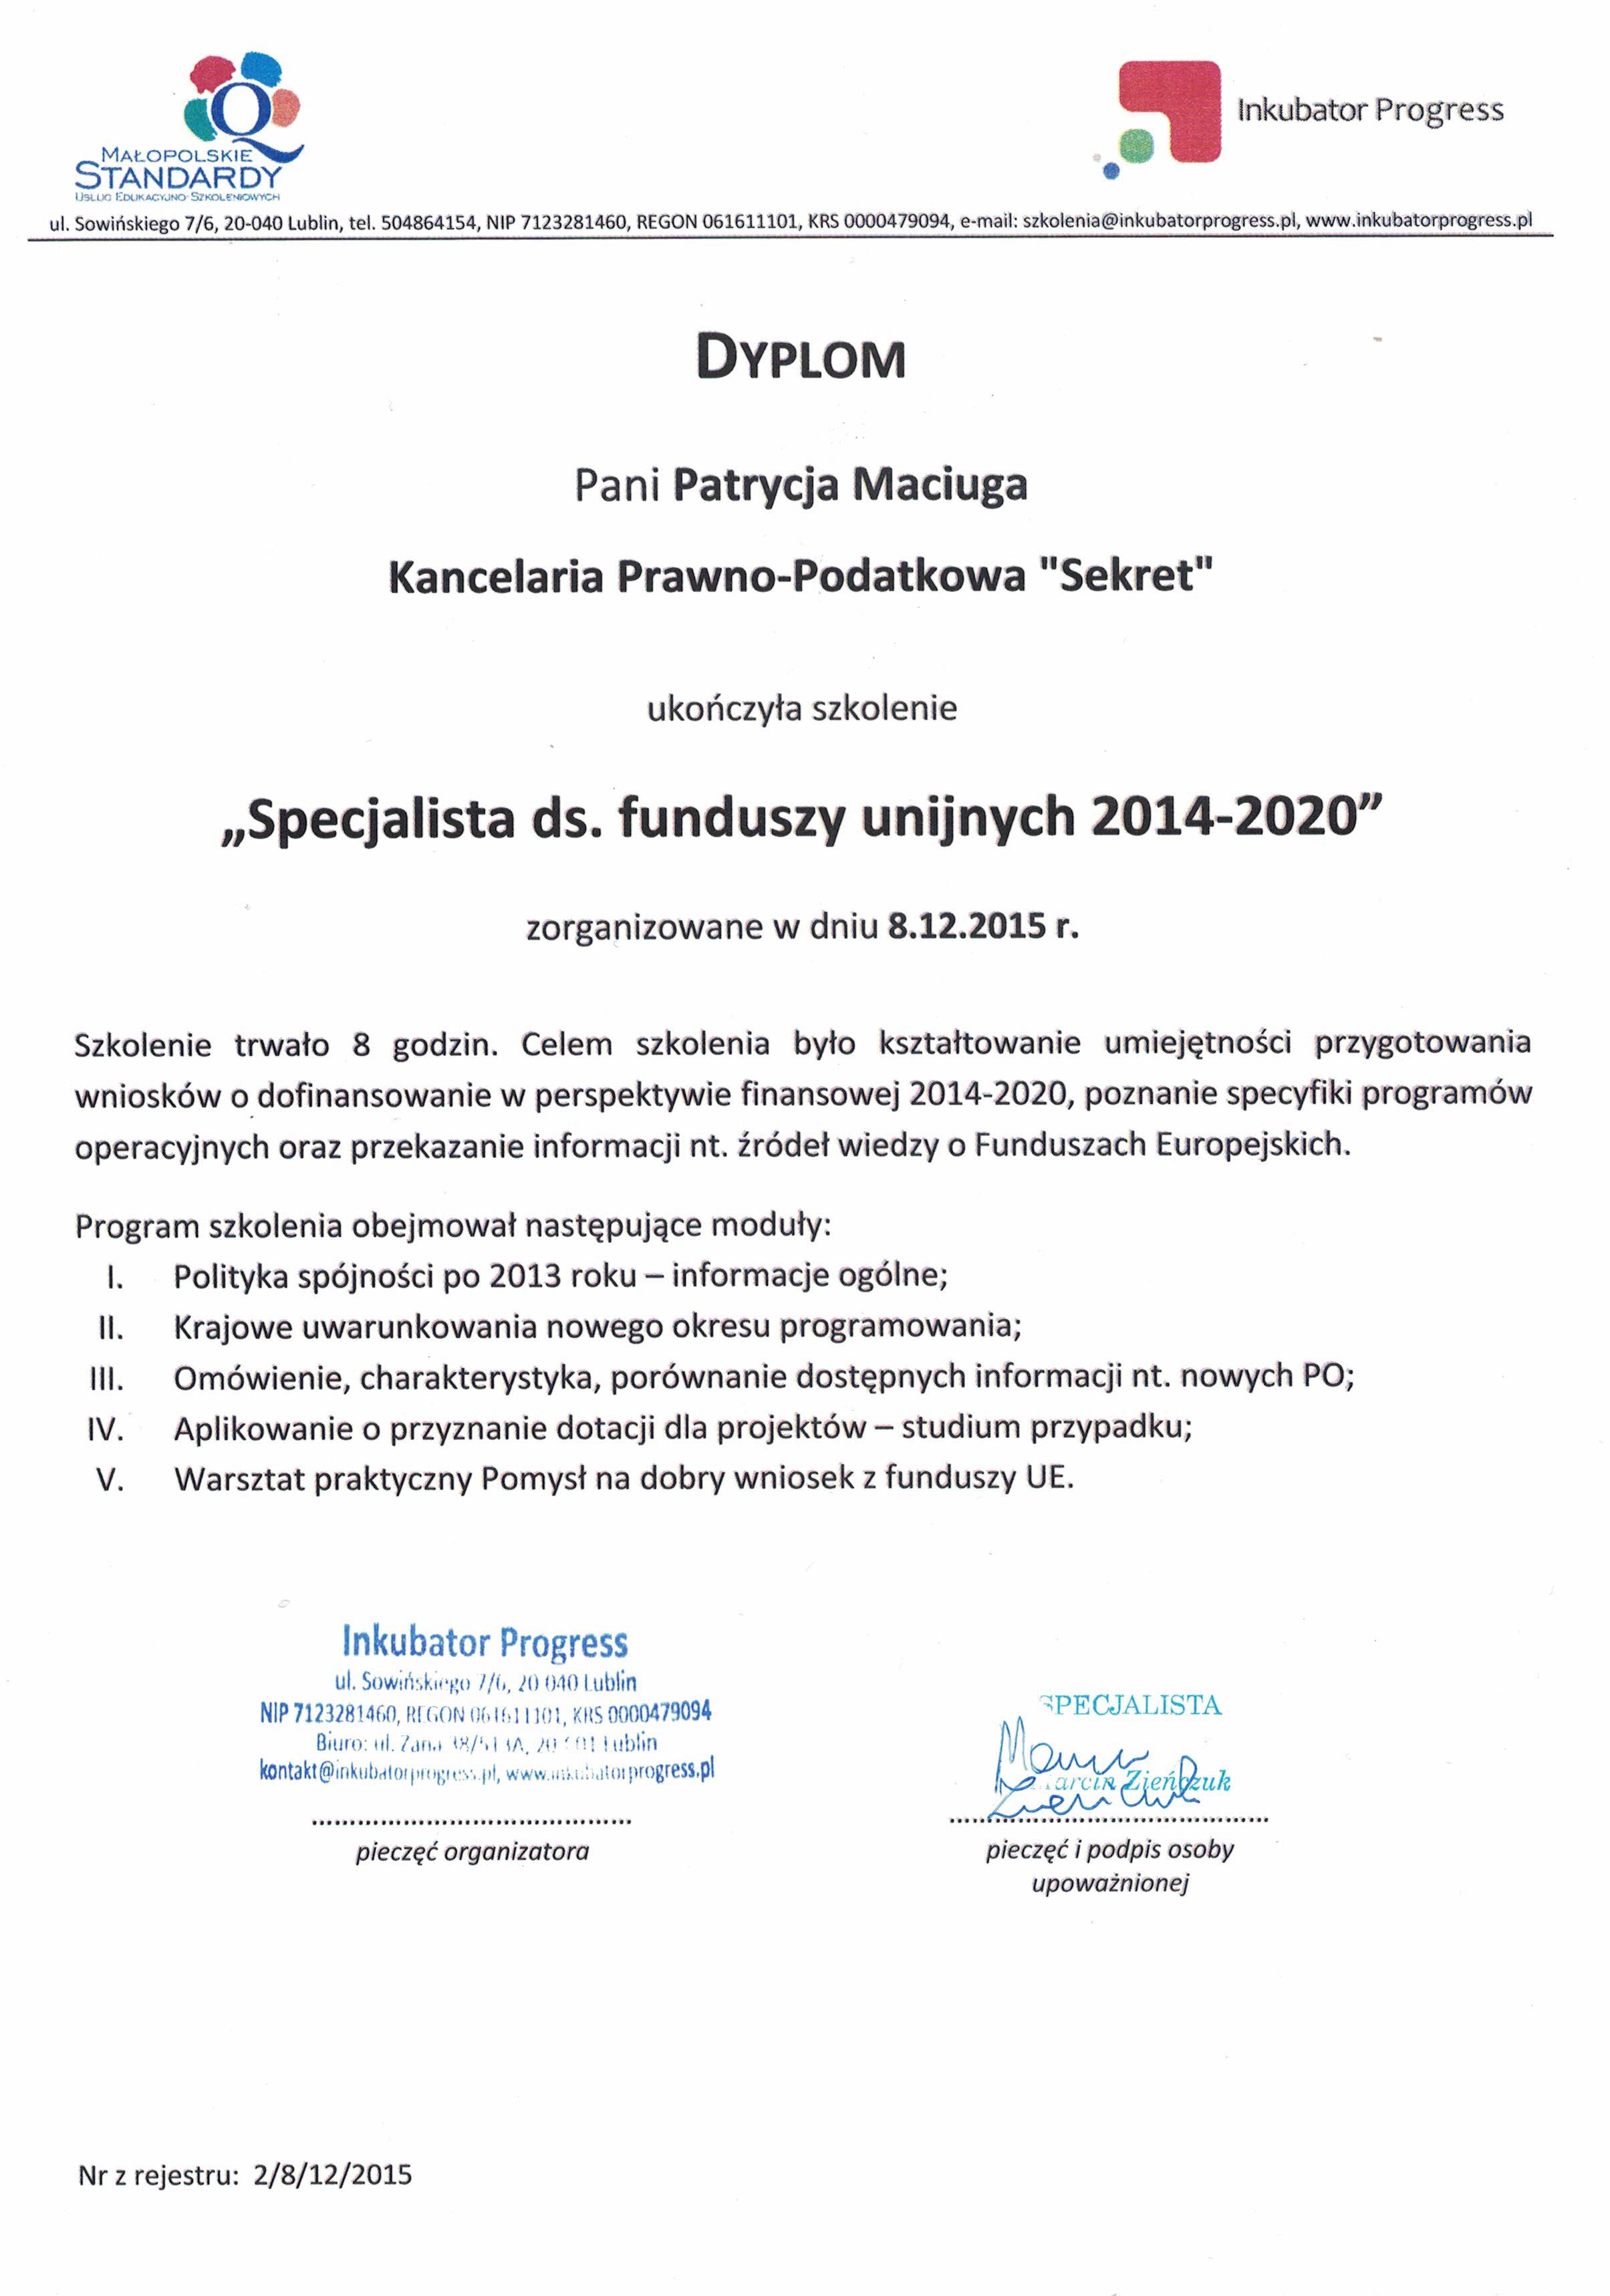 Kancelaria Prawno-Podatkowa Sekret Teresa Wojciechowska certyfikat 4